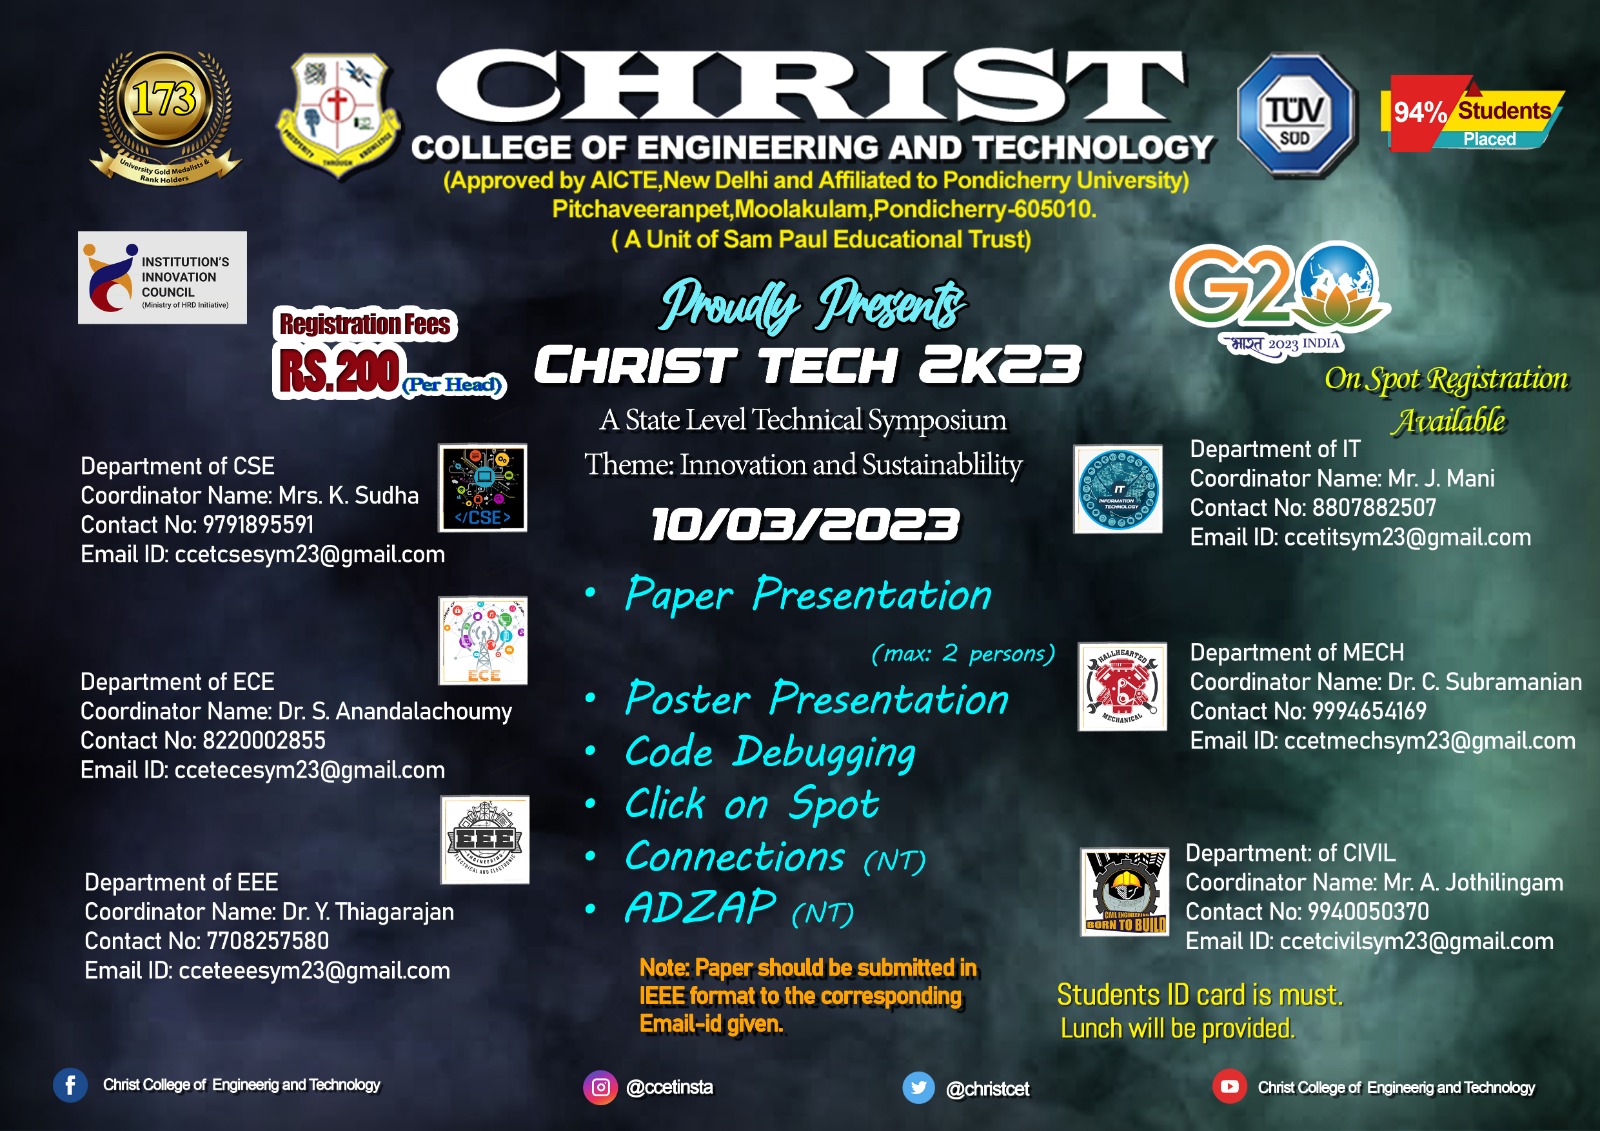 ChristTech 2k23